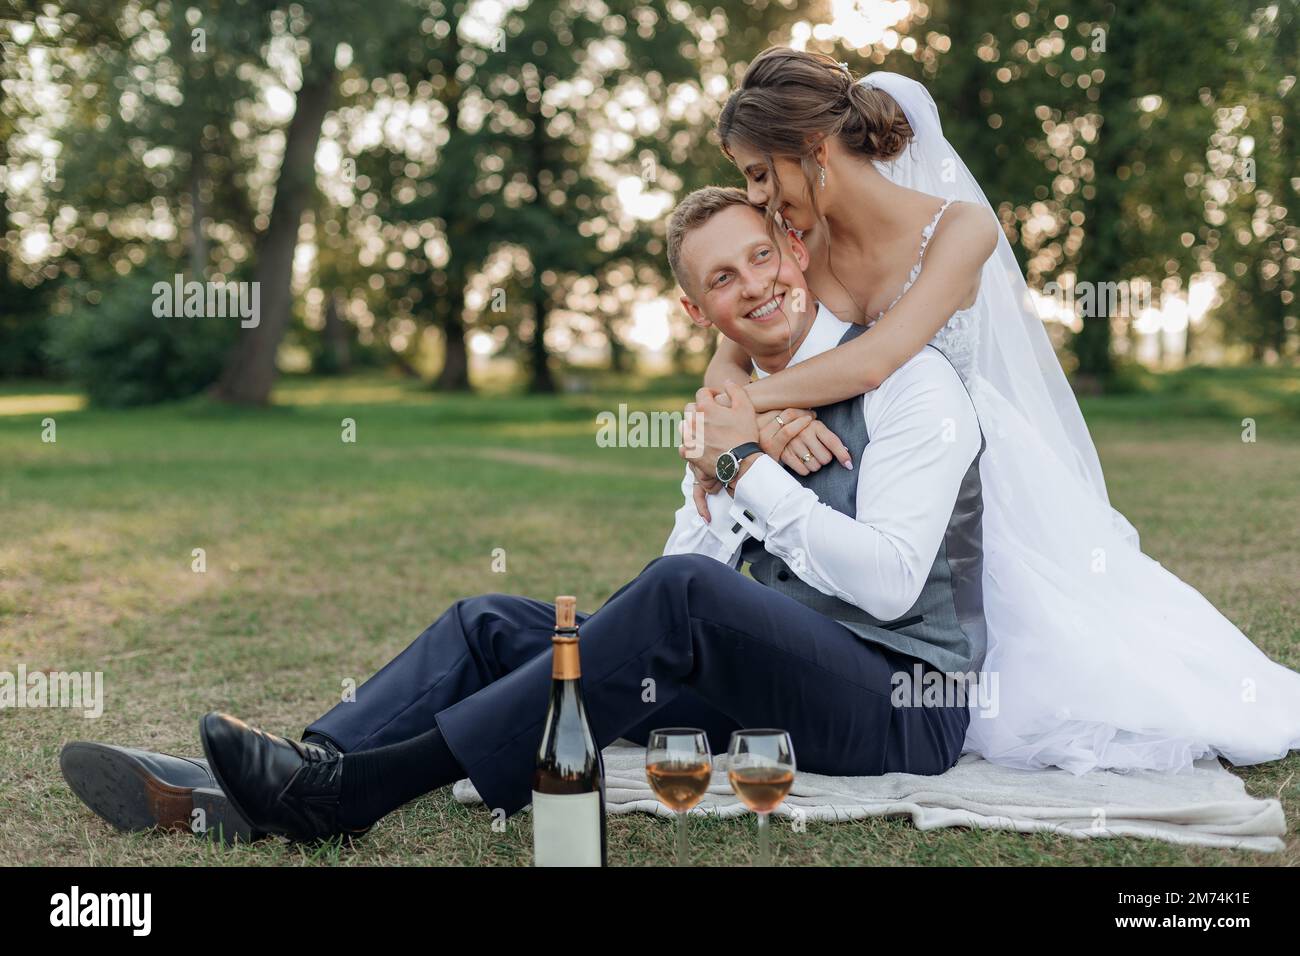 Coppia sposata di recente verticale in abito da sposa baciare testa di sposo abbracciare e bere champagne il giorno del matrimonio Foto Stock